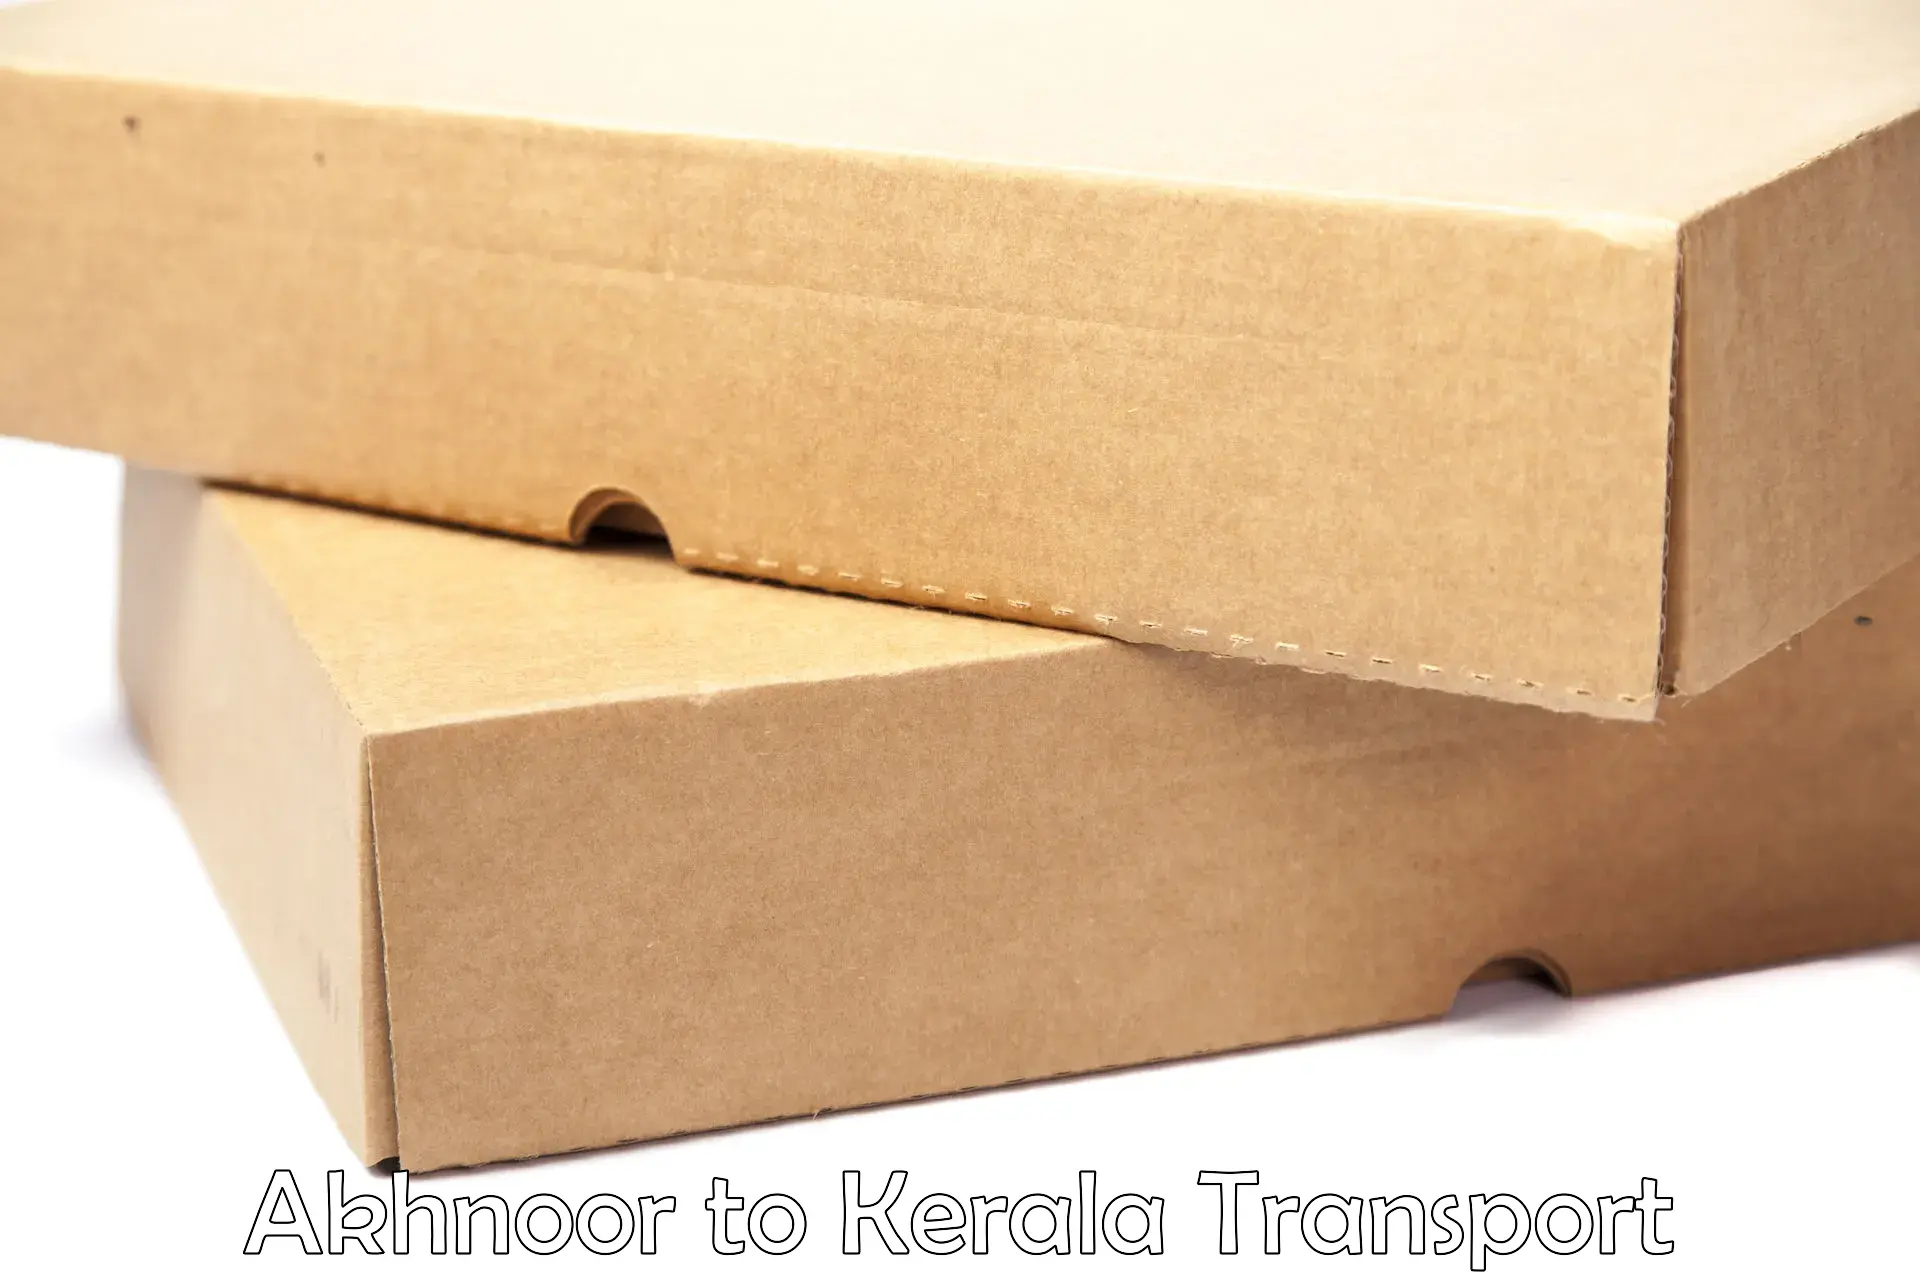 Vehicle parcel service Akhnoor to Ernakulam